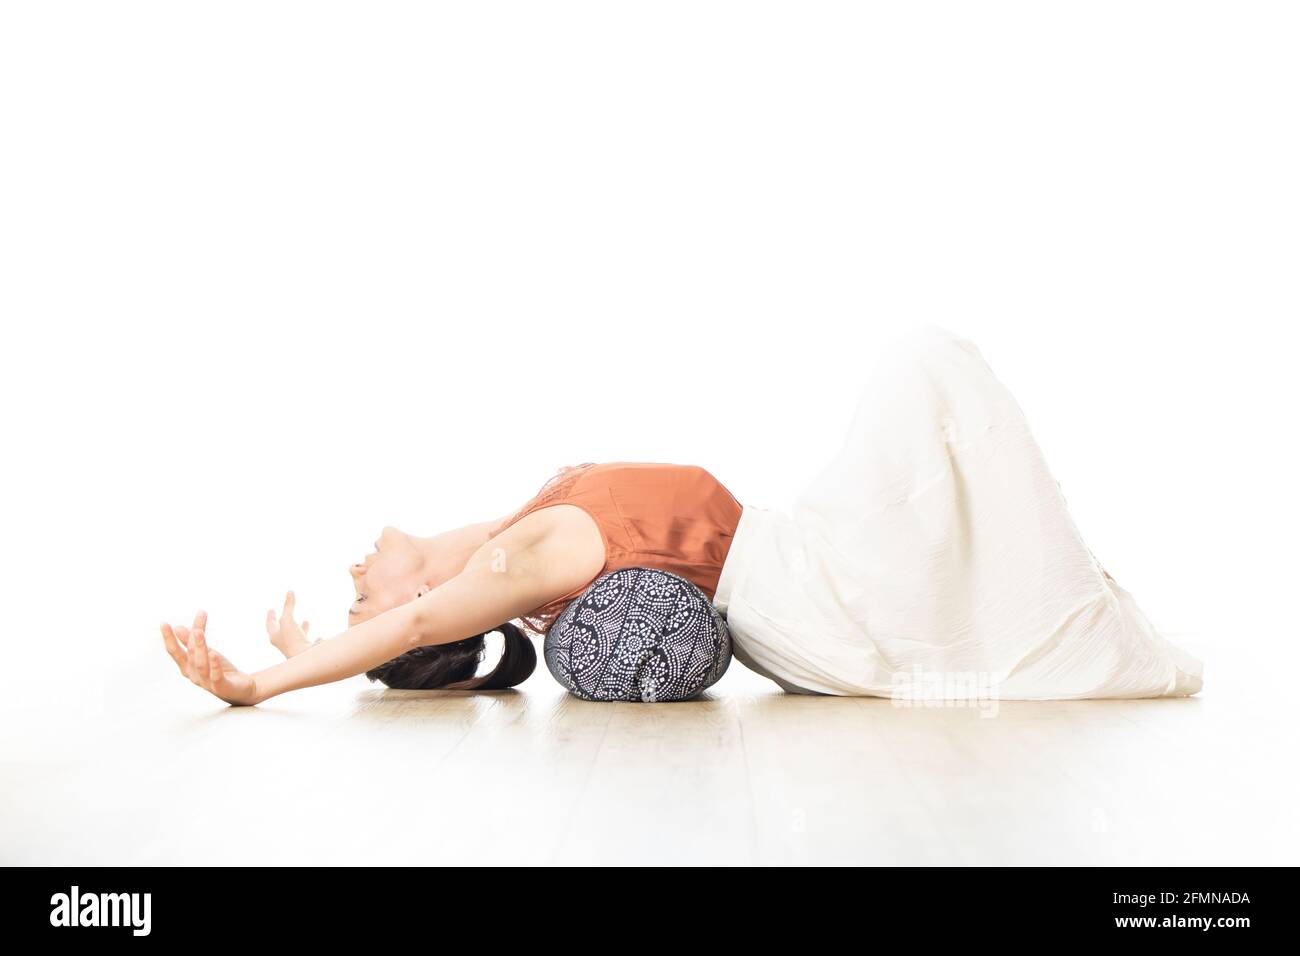 Erholendes Yoga mit einem Aufpolster. Junge sportliche attraktive Frau im leuchtend weißen Yoga-Studio, Stretching und Entspannung während erholsamem Yoga mit Stockfoto